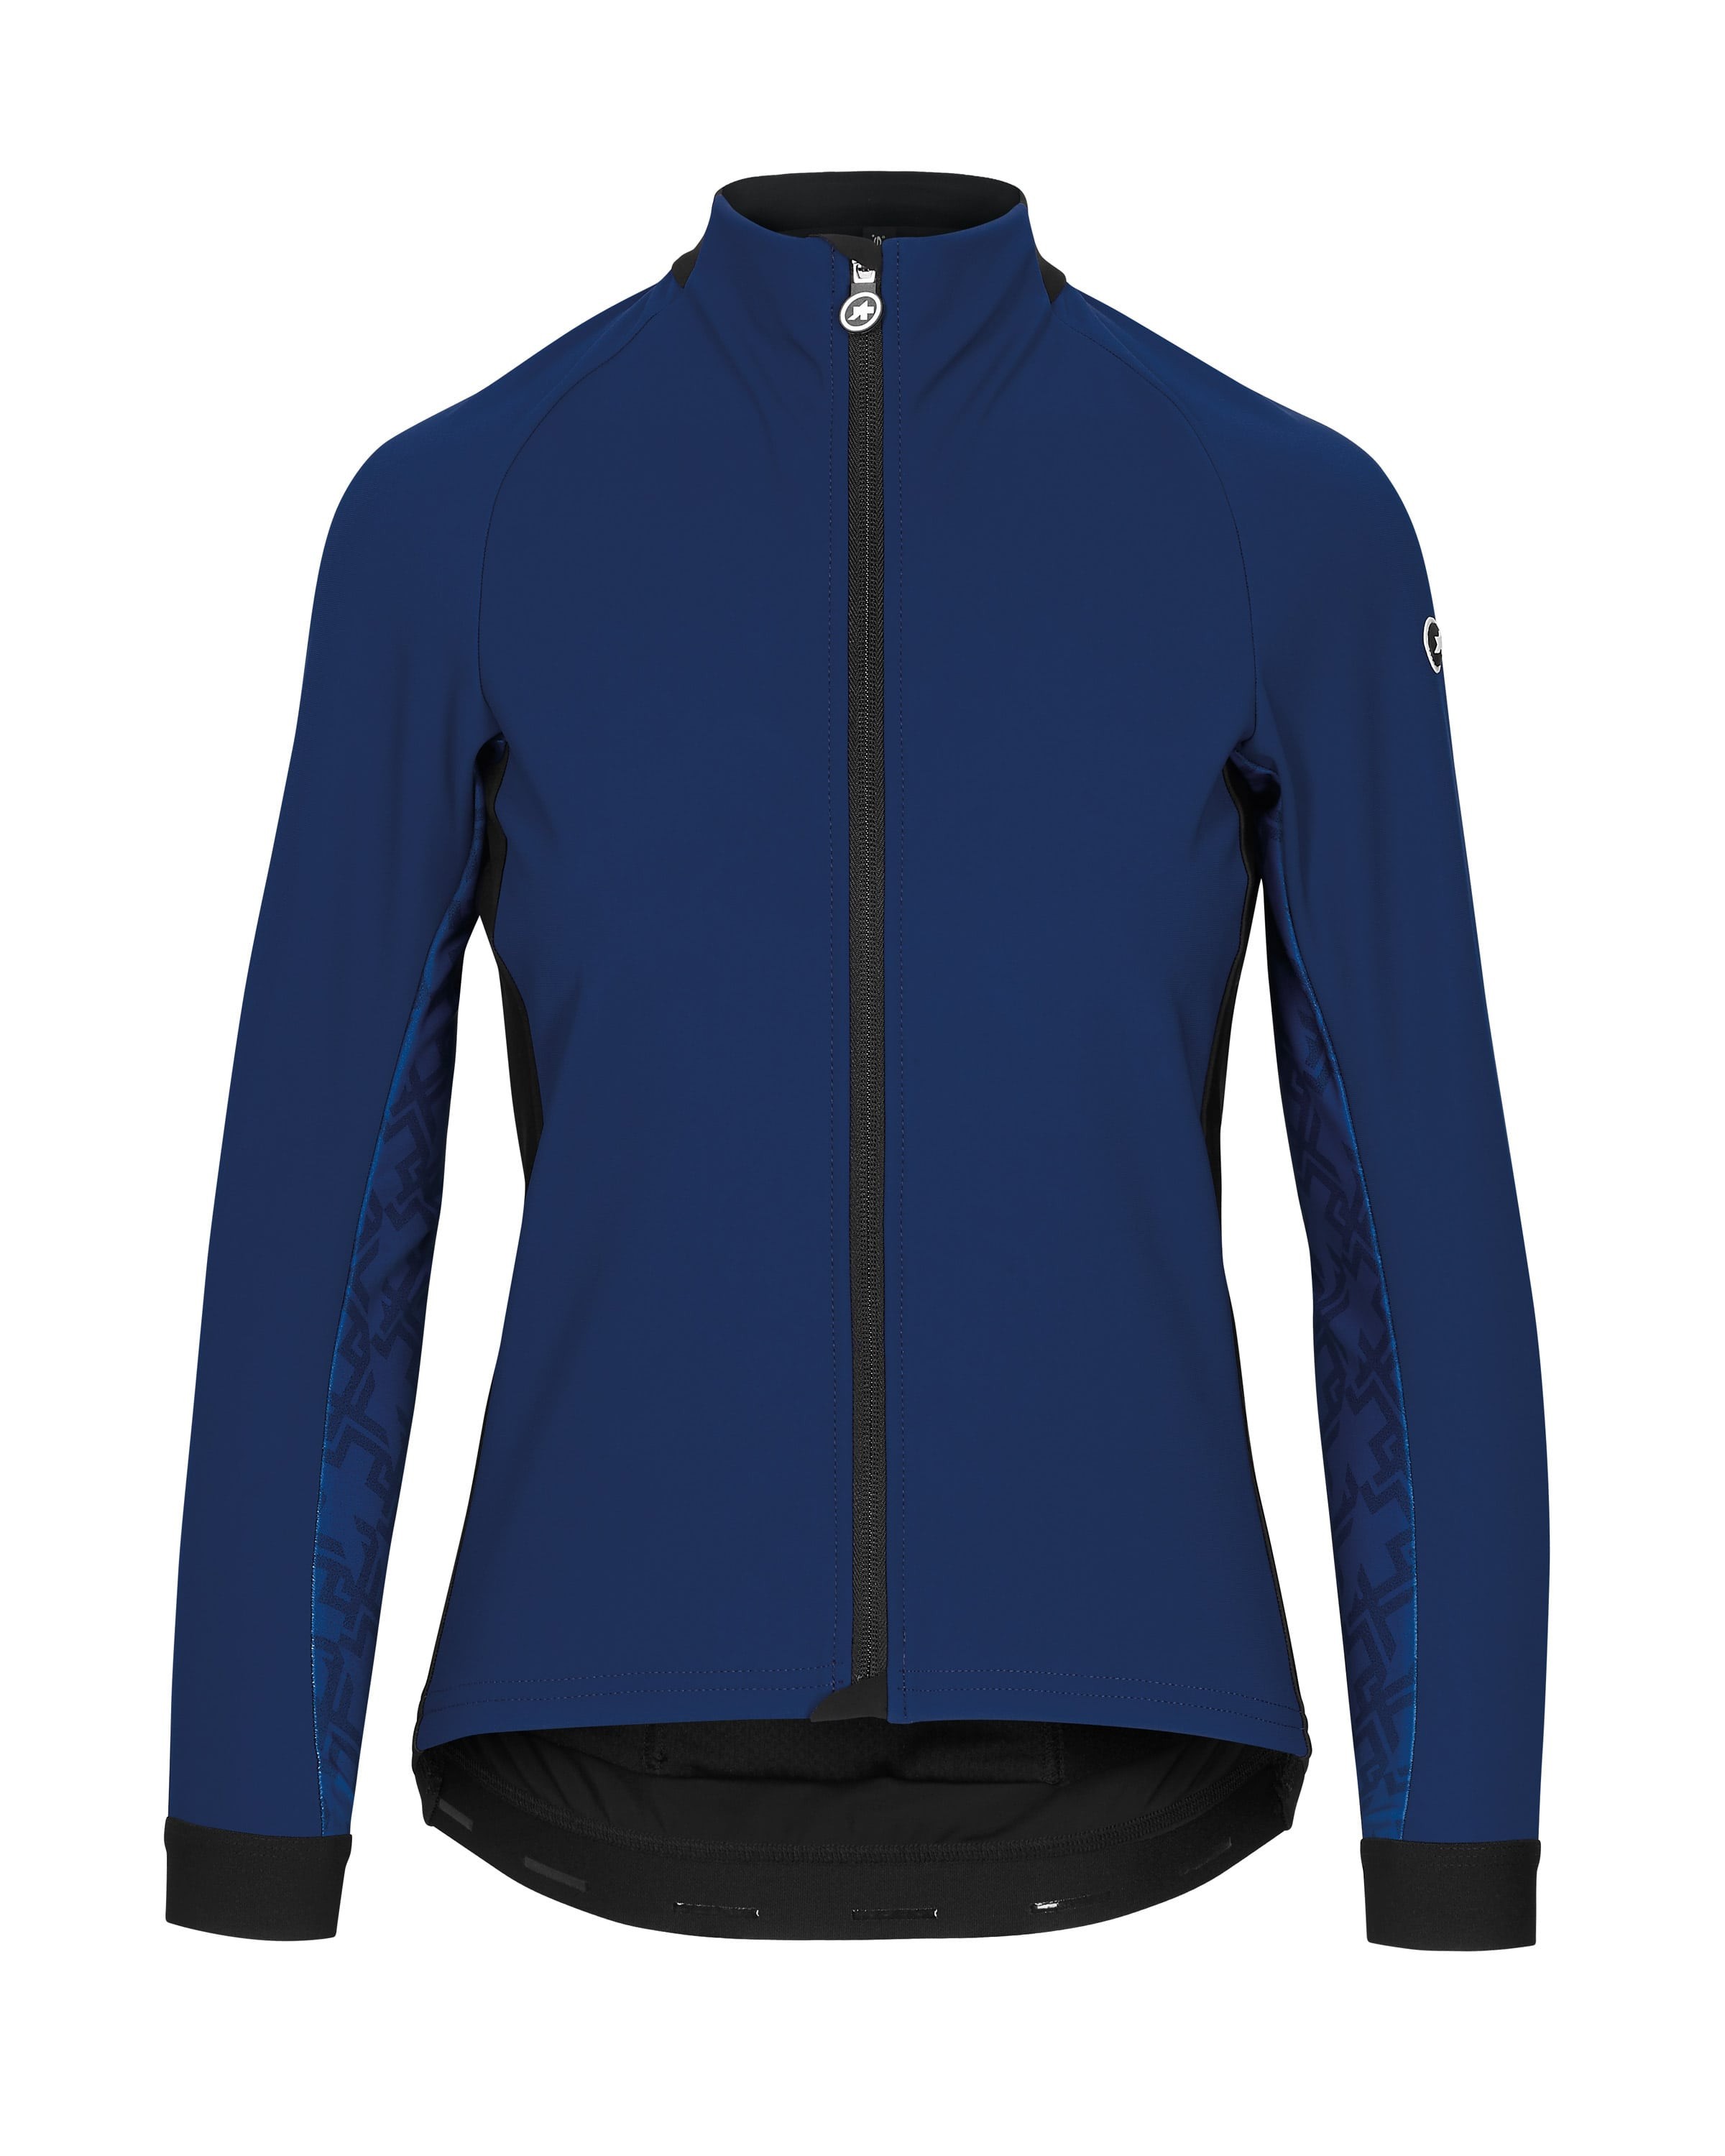 Assos uma gt winter veste de cyclisme femme caleum bleu